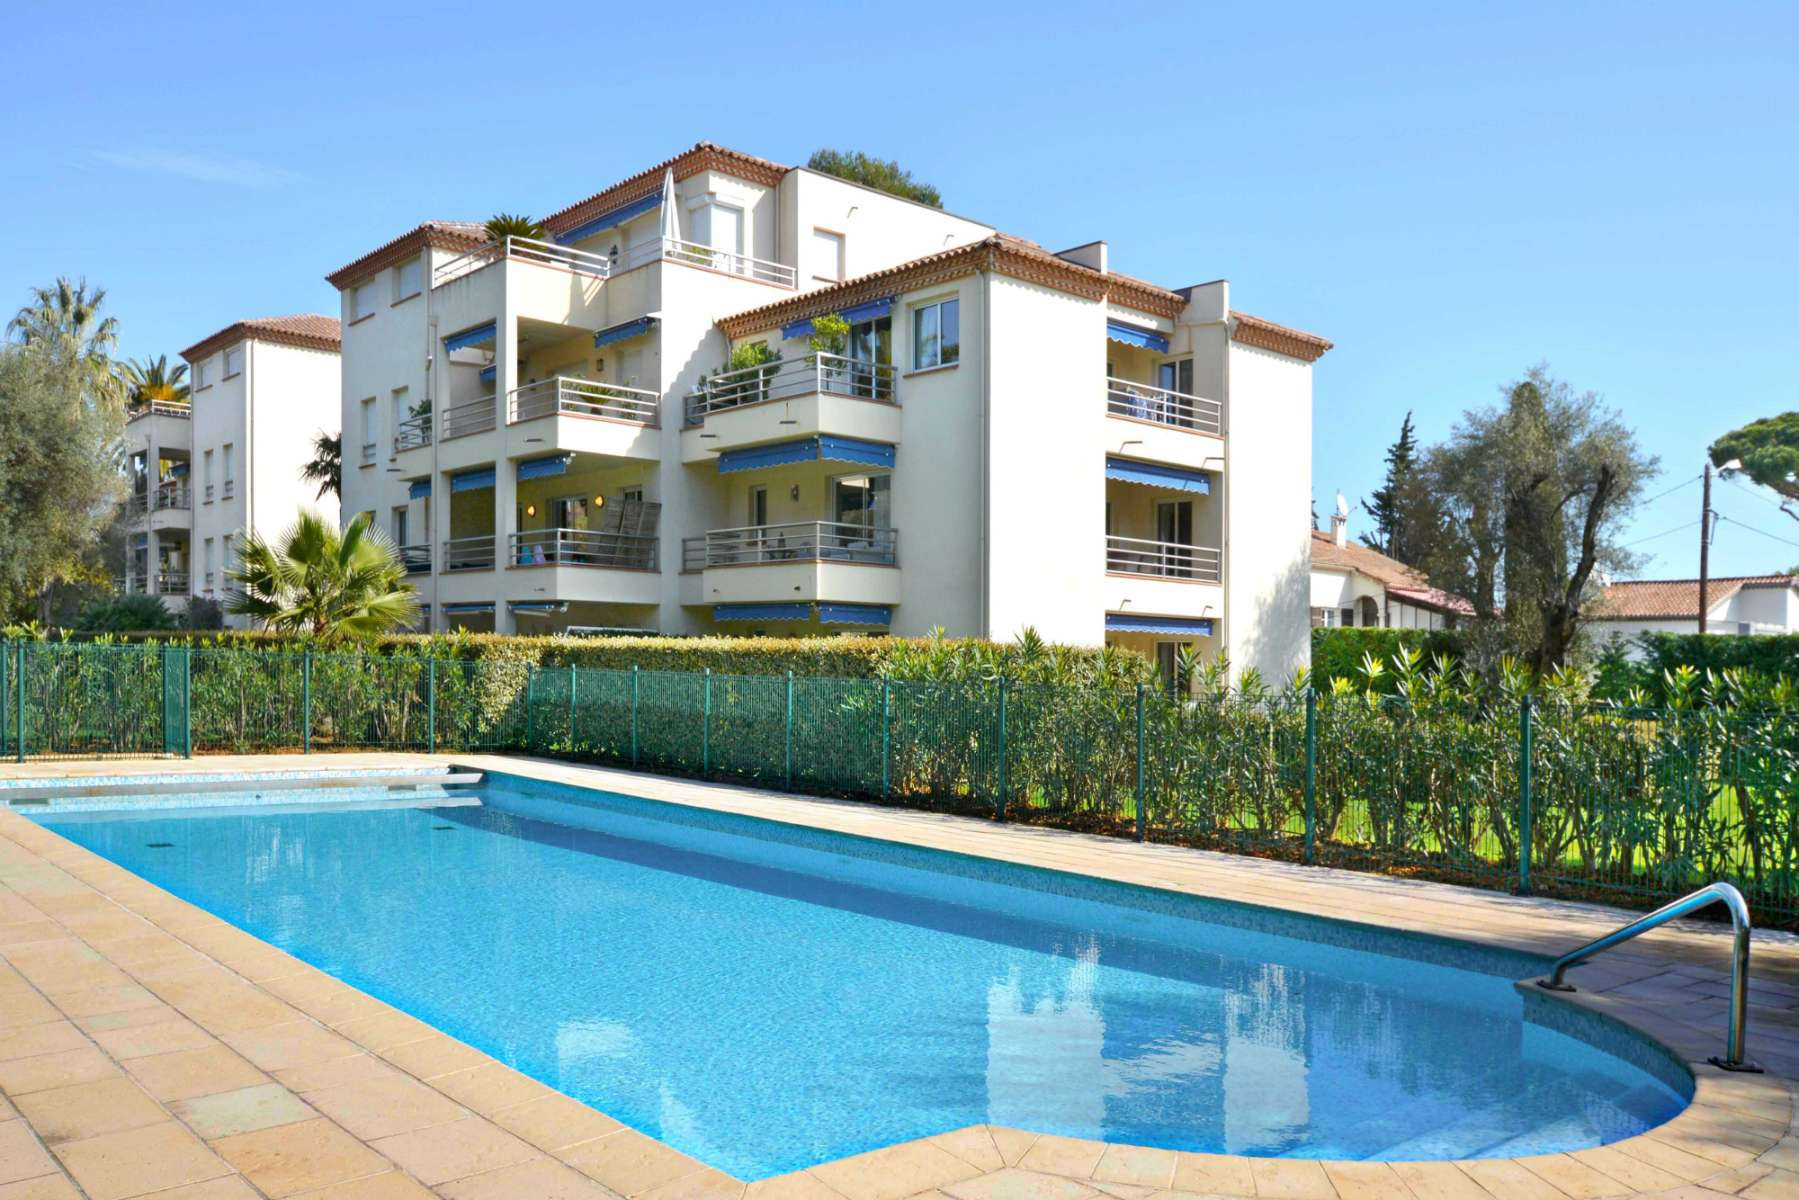 Оренда апартаментів у закритій резиденції з басейном на Cap d'Antibes